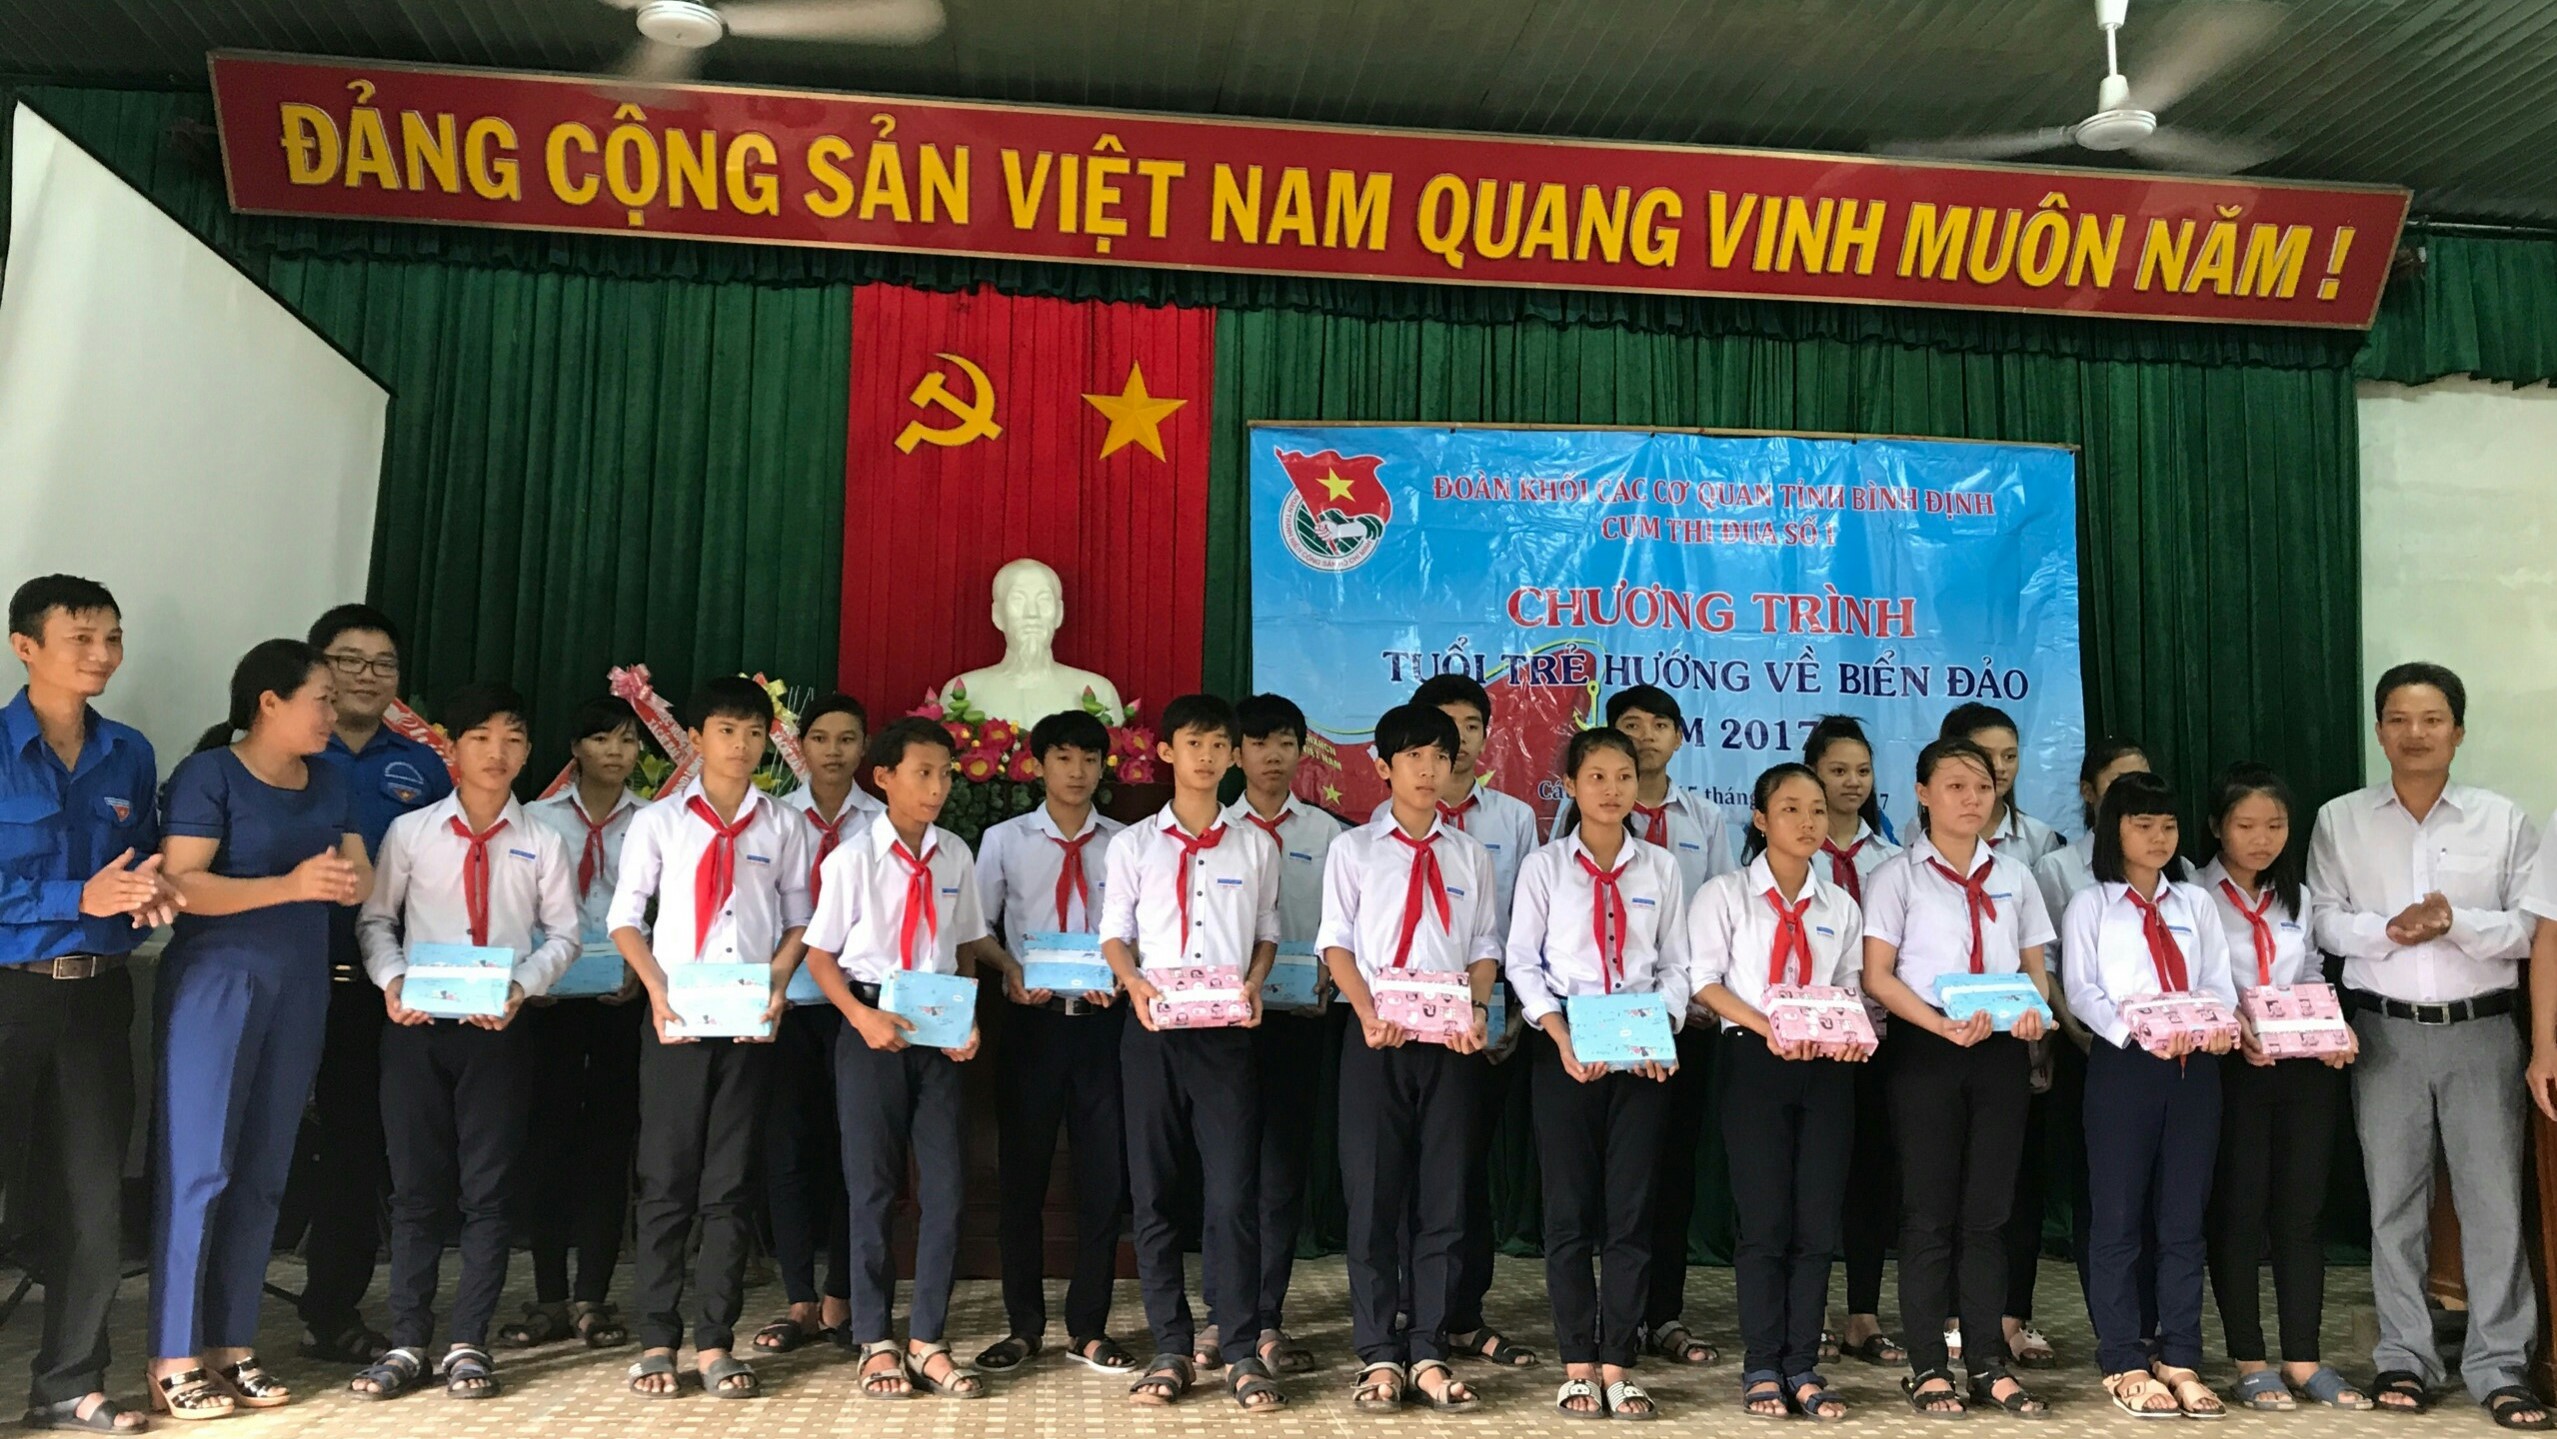 Chi đoàn Cục Thi hành án dân sự tỉnh Bình Định tham gia cùng Đoàn Khối các cơ quan tỉnh Bình Định – Cụm Thi đua số 1 tổ chức chương trình “Tuổi trẻ hướng về biển đảo” năm 2017,